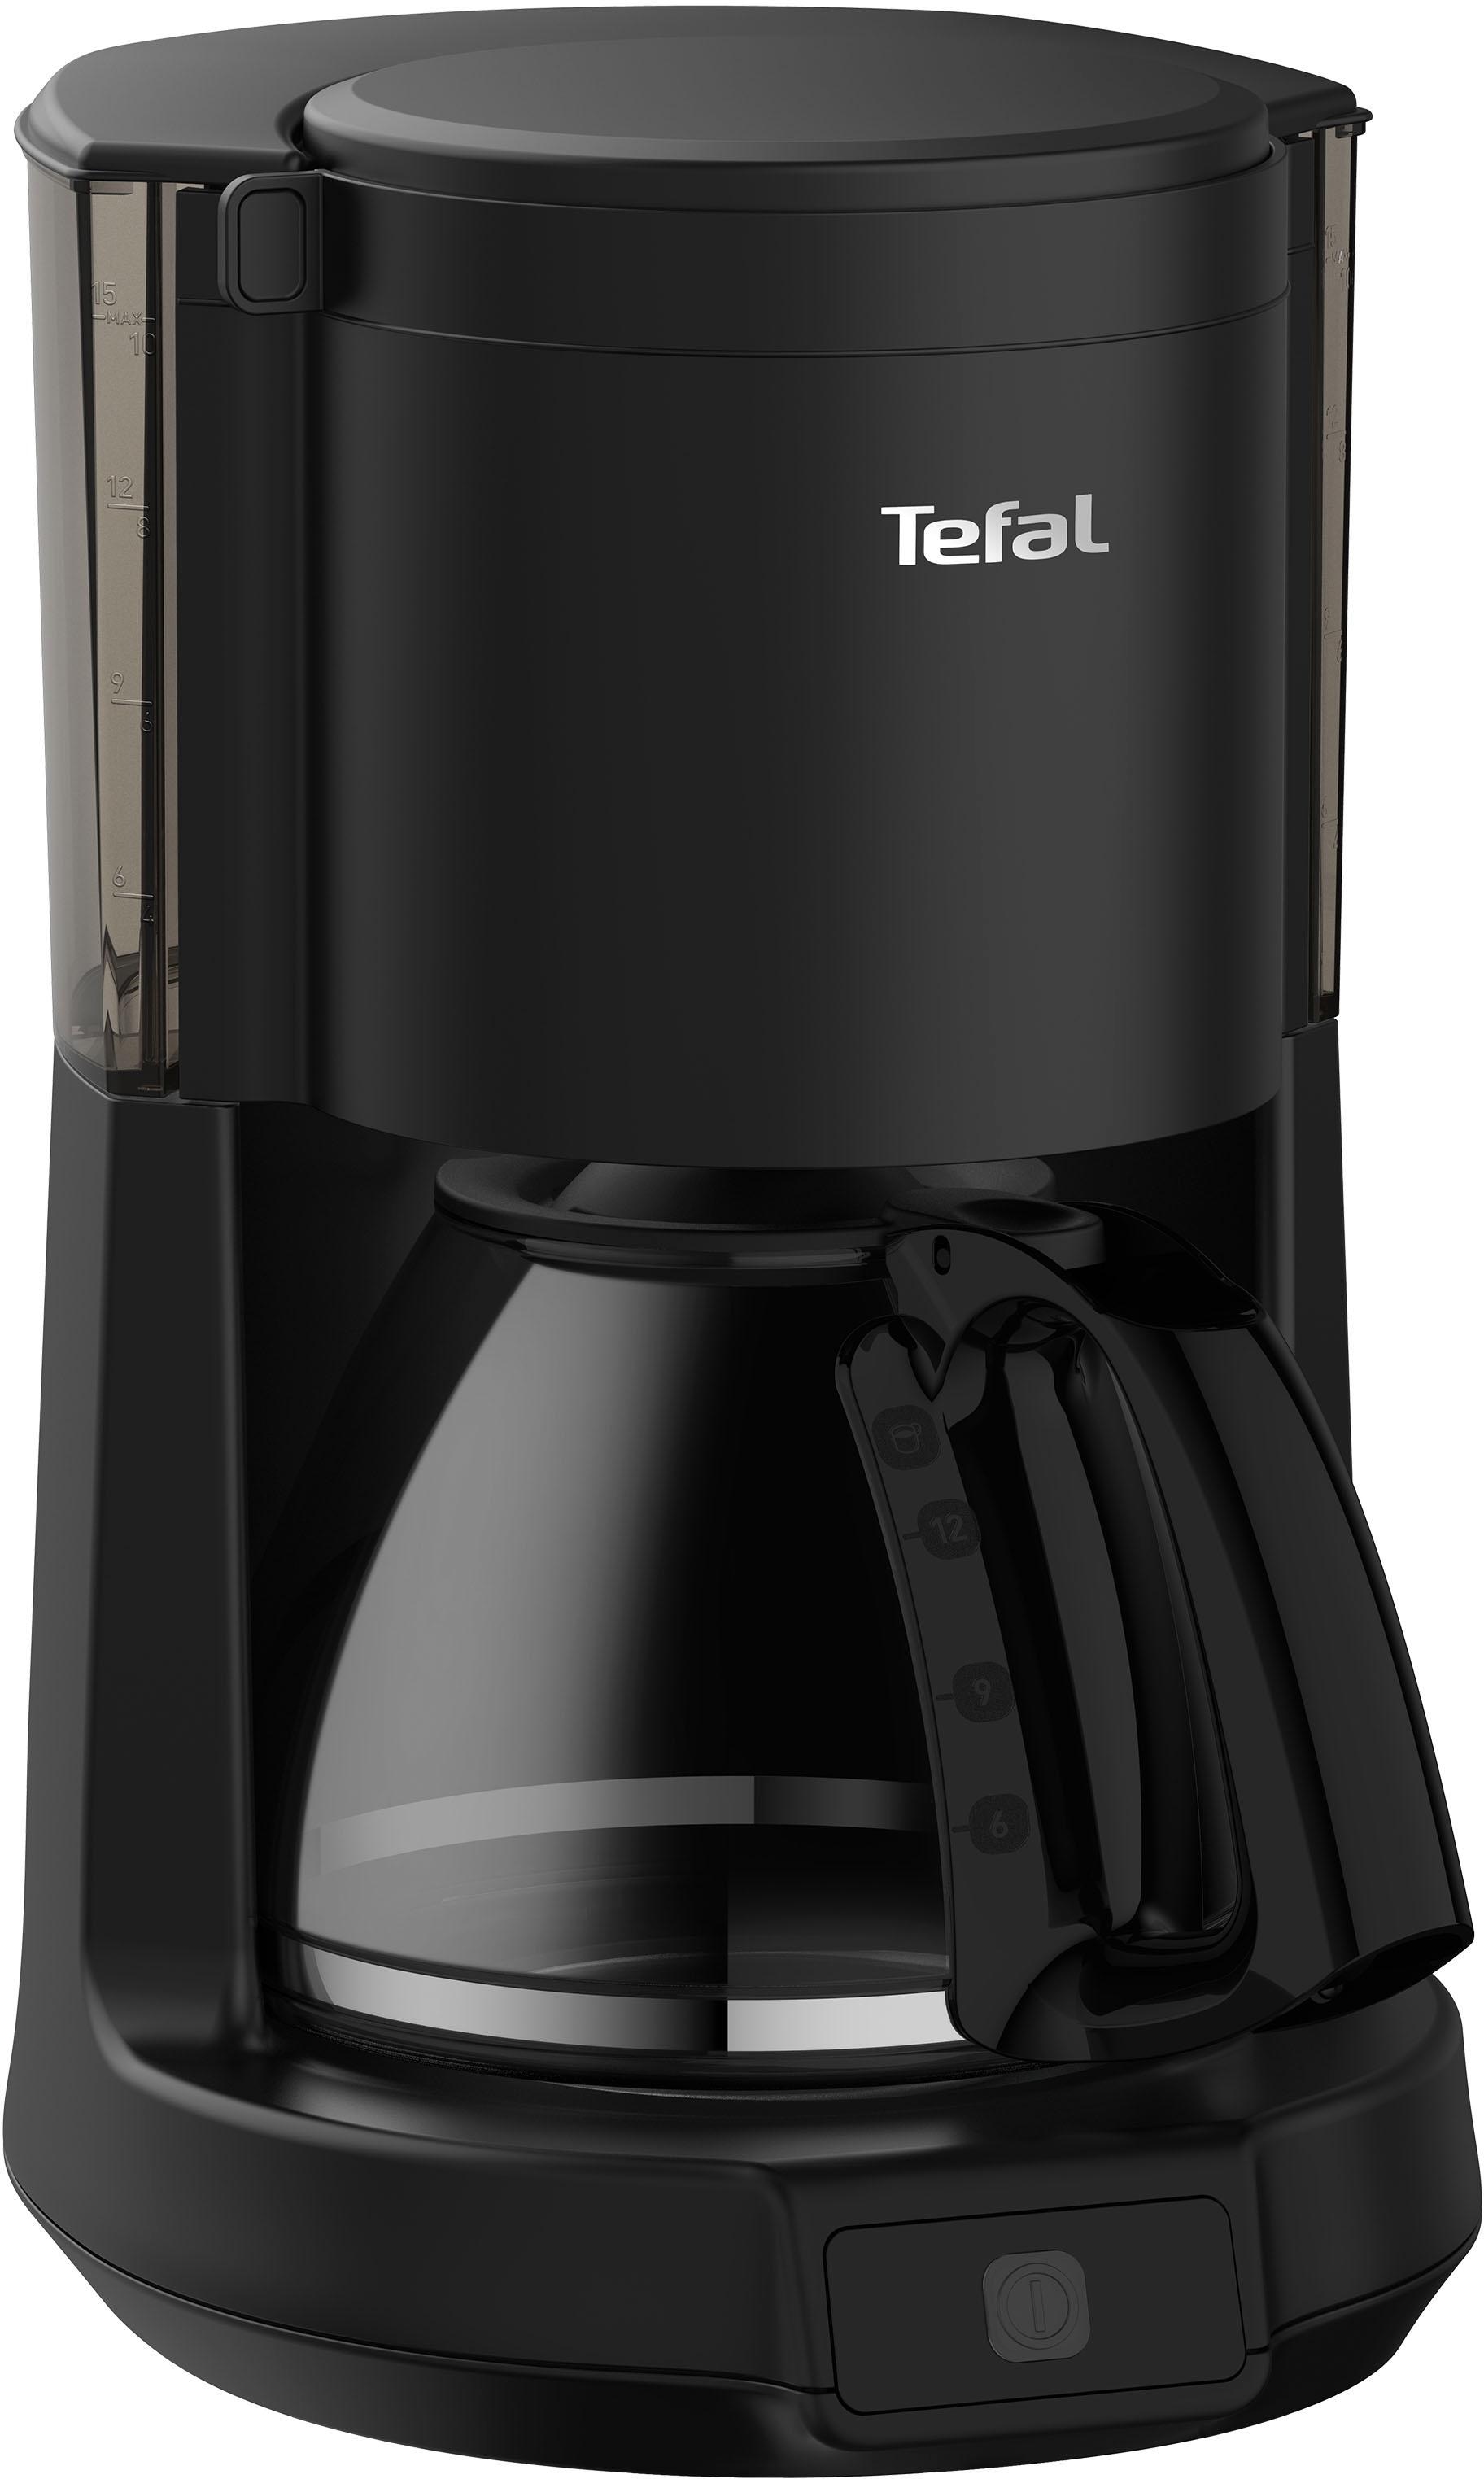 Tefal Filterkaffeemaschine »CM272N Principio Select«, 1,25 l Kaffeekanne, 1x4, bis 15 Tassen, Warmhaltefunktion, autom. Abschaltung nach 30 Min.